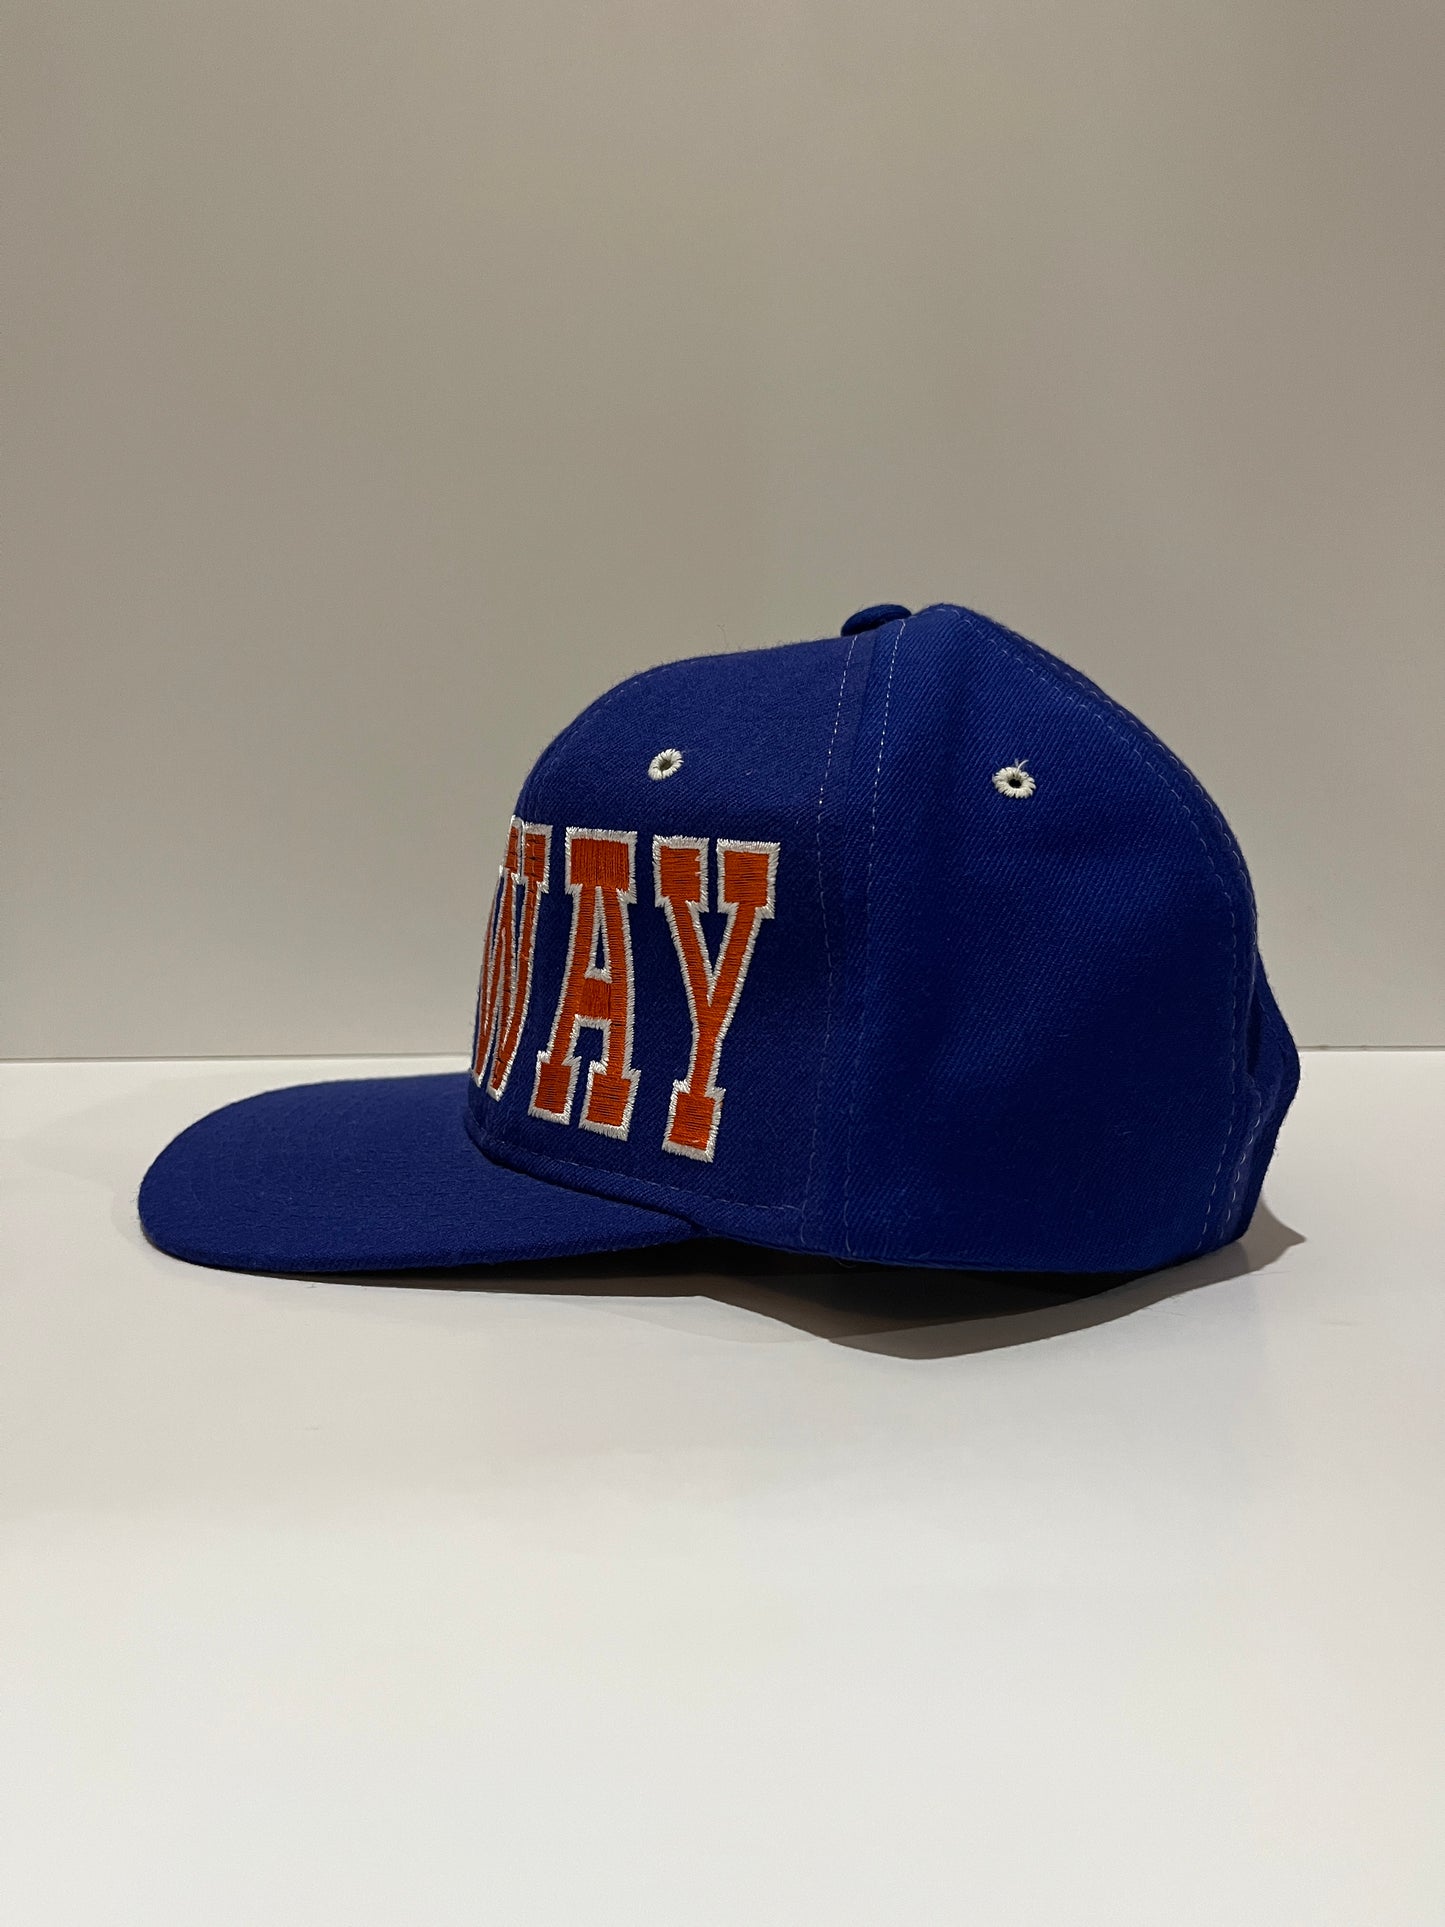 Vintage Starter Denver Broncos "John Elway" Snapback Hat